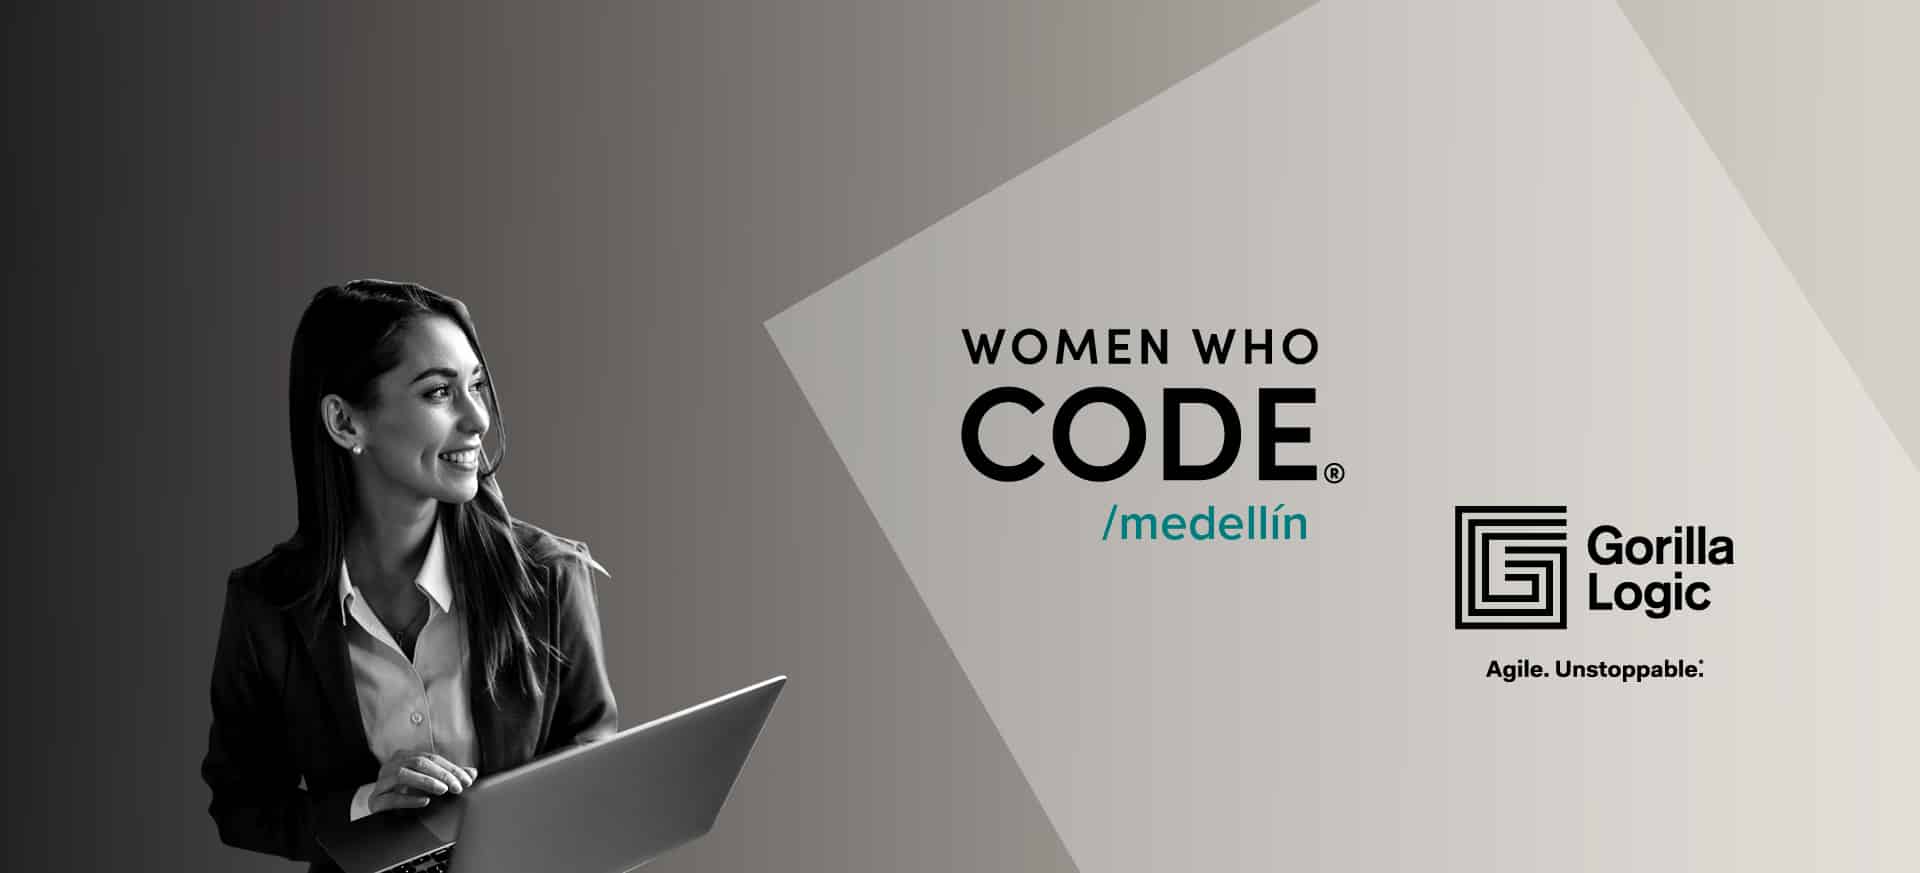 Gorilla Logic patrocina programa de desarrollo de software de la organización ‘Women Who Code Medellín’